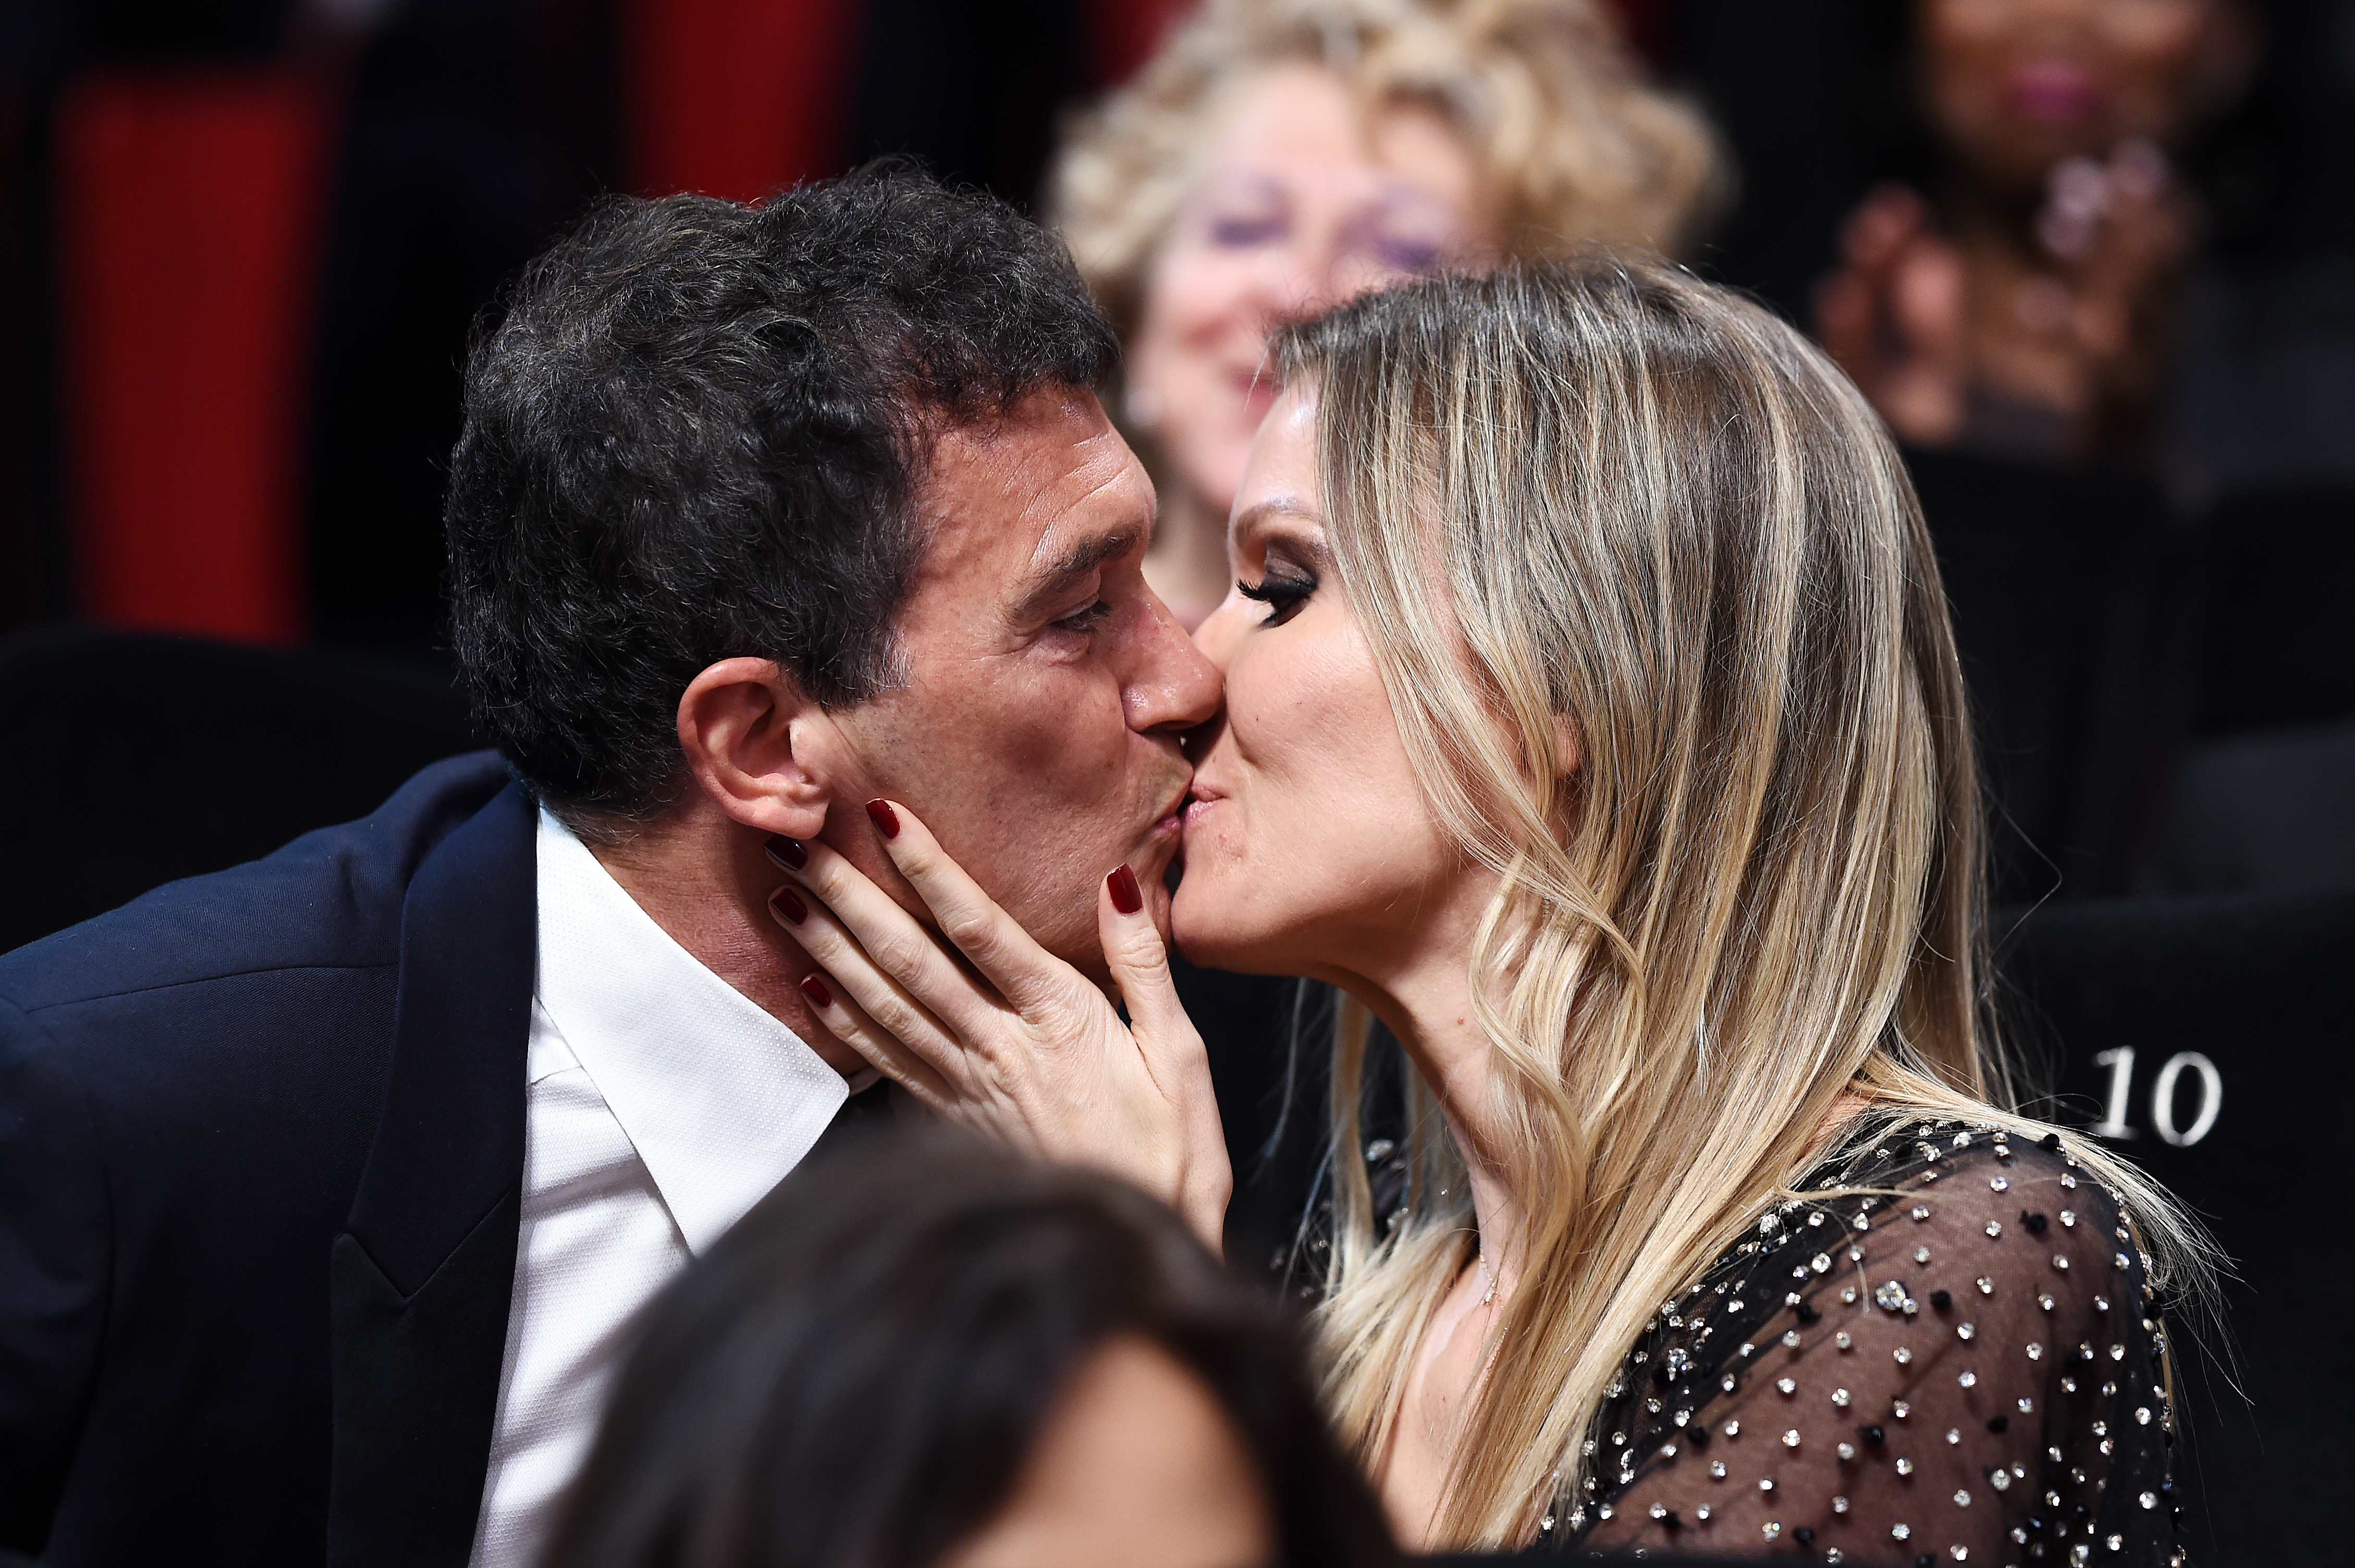 Antonio Banderas et Nicole Kempel lors de la 72e édition du festival de Cannes, le 25 mai 2019 | Source : Getty Images